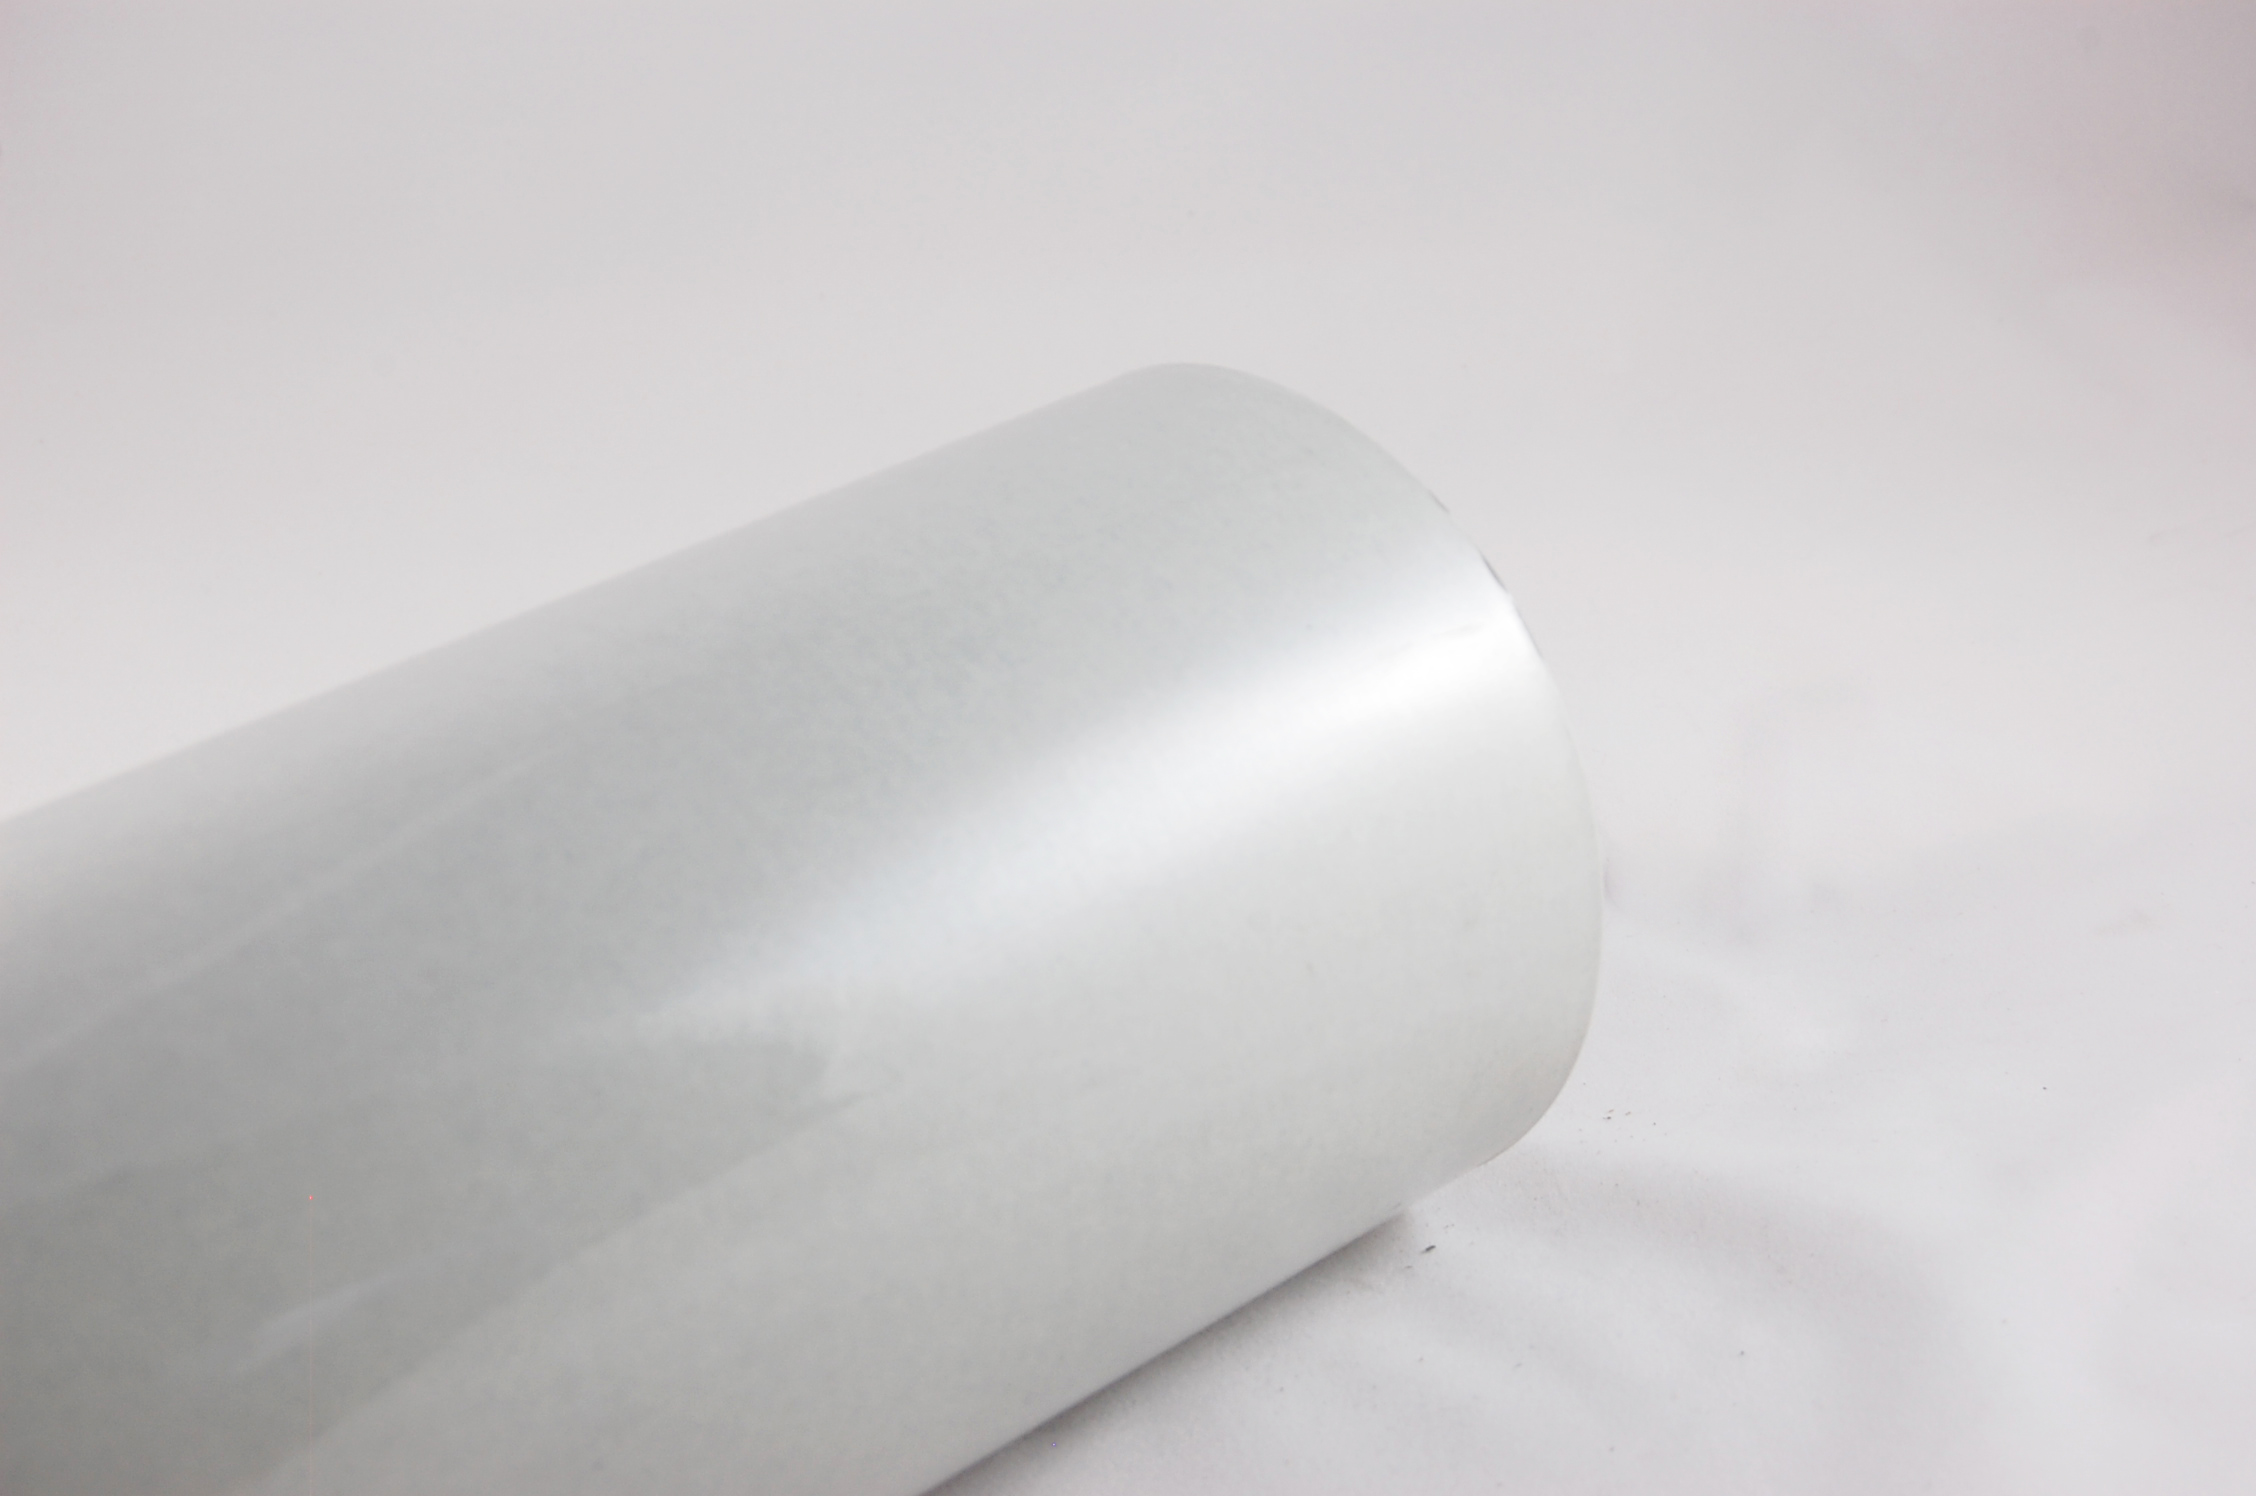 Acuflex® RMR 5-2-5 .012" thick 3-Ply RAG/MYLAR/RAG Flexible Laminate 130°C, gray, 36" wide x  250 SY roll